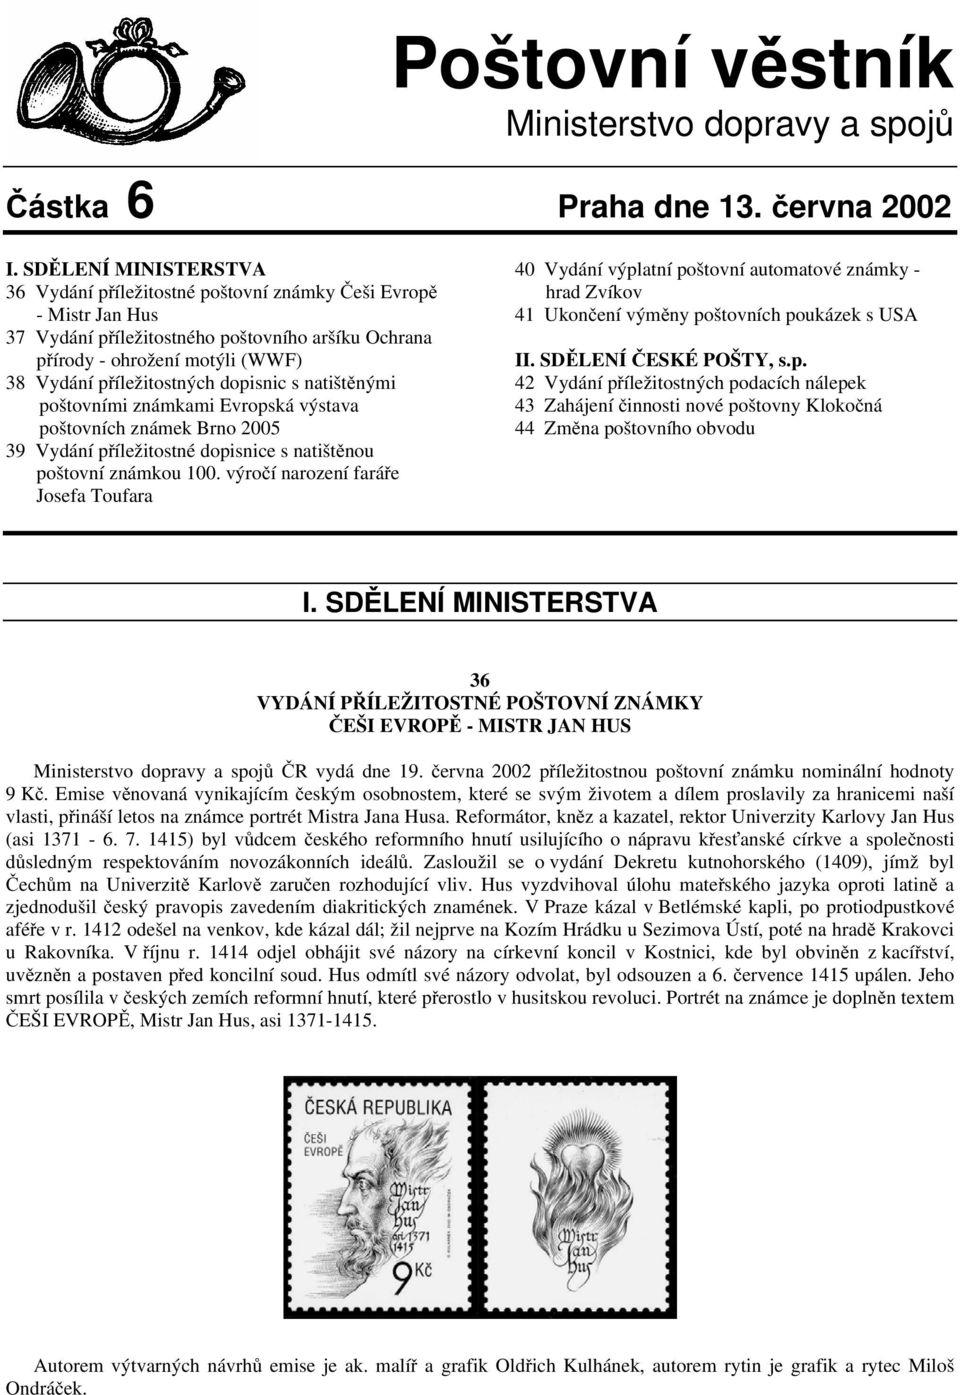 dopisnic s natištěnými poštovními známkami Evropská výstava poštovních známek Brno 2005 39 Vydání příležitostné dopisnice s natištěnou poštovní známkou 100.